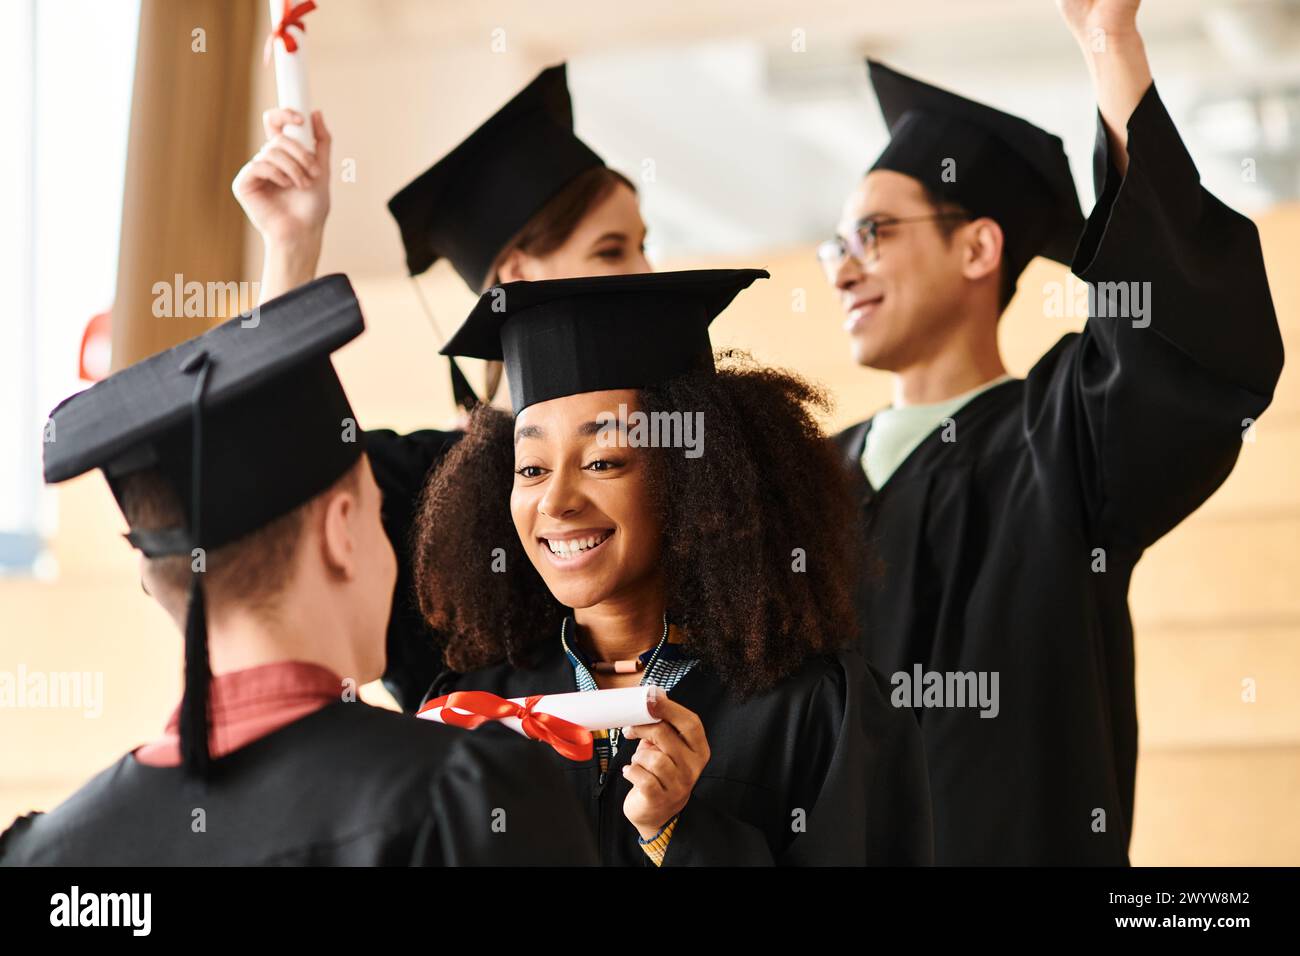 Eine Gruppe junger Menschen mit unterschiedlichem Hintergrund feiert in Abschlusskleidern bei einer Universitätszeremonie. Stockfoto